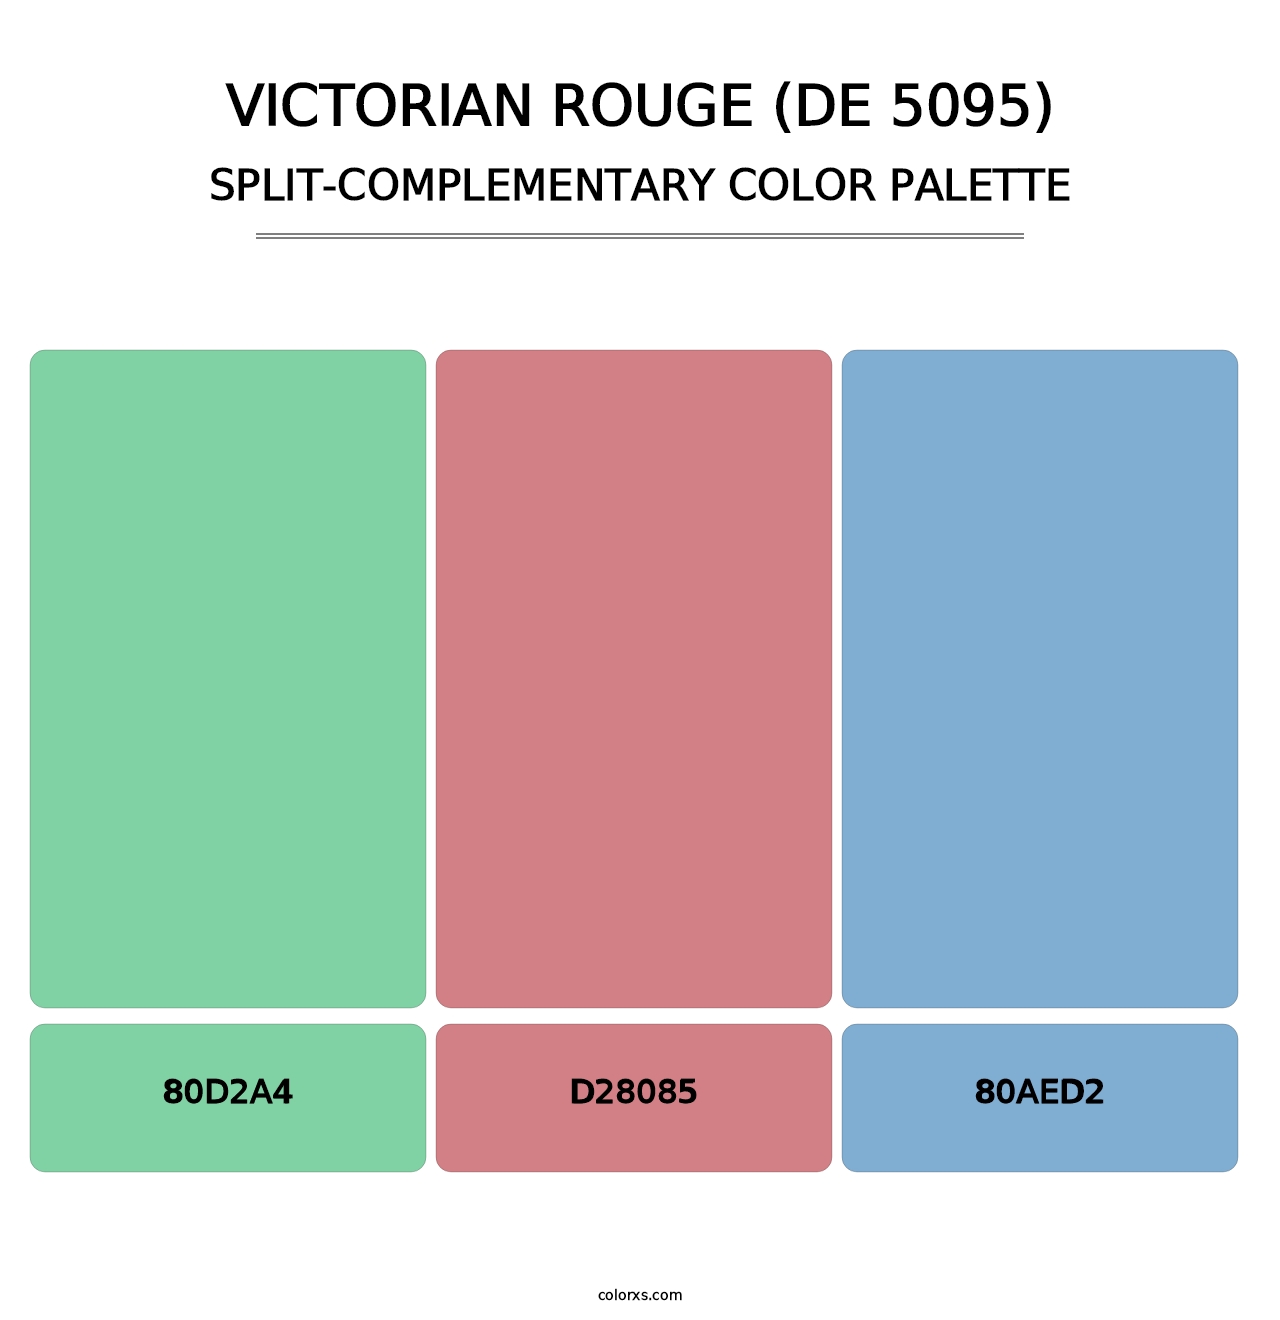 Victorian Rouge (DE 5095) - Split-Complementary Color Palette